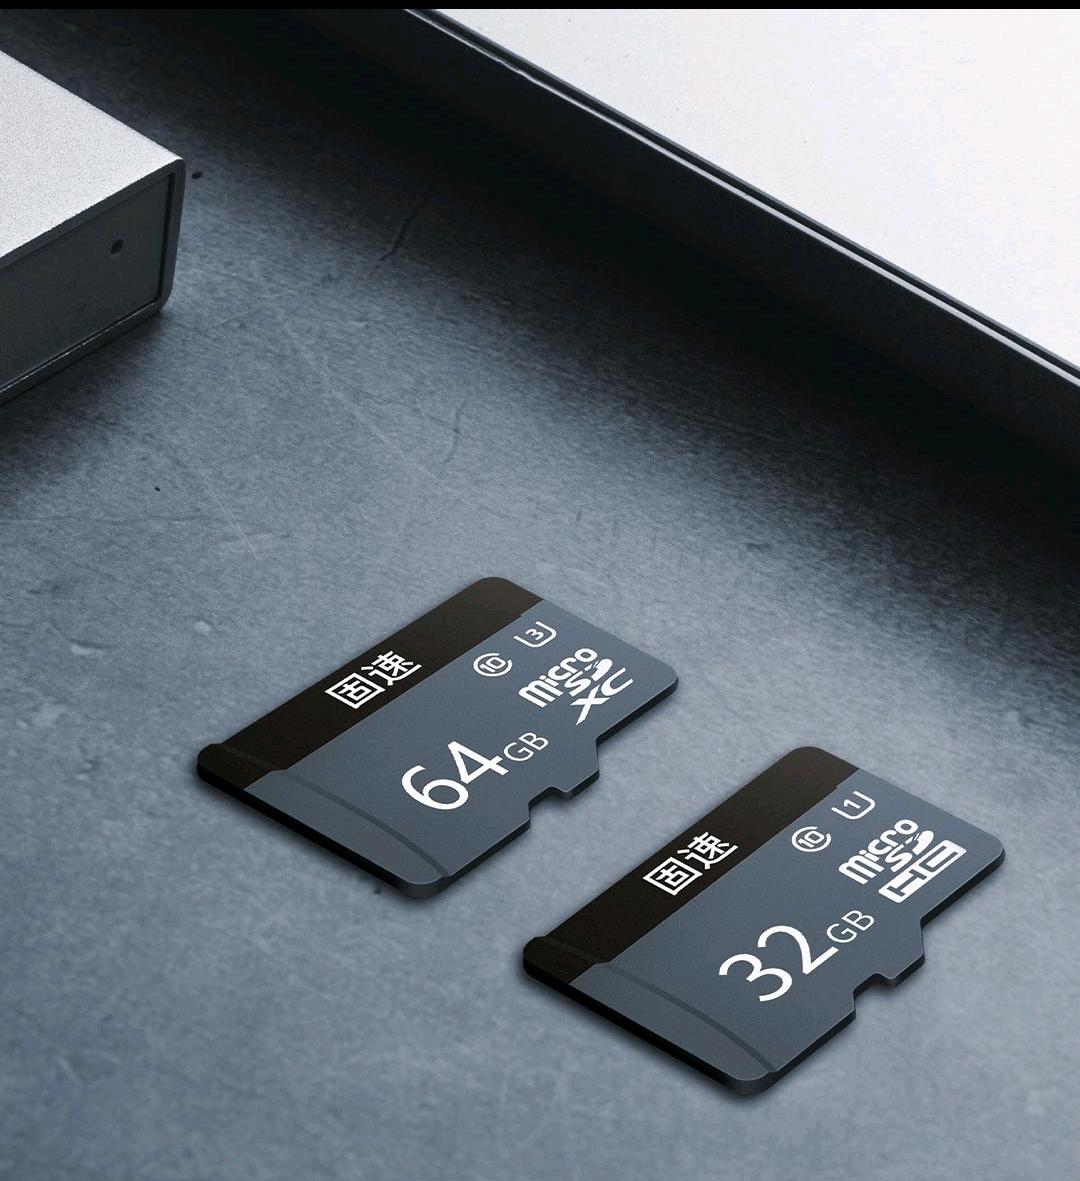 比亚迪唐DM 原车配的8G内存卡会不会太小了？你们有没有更换更大的内存卡？想换个大一点的内存卡。64G 或者 32G 够